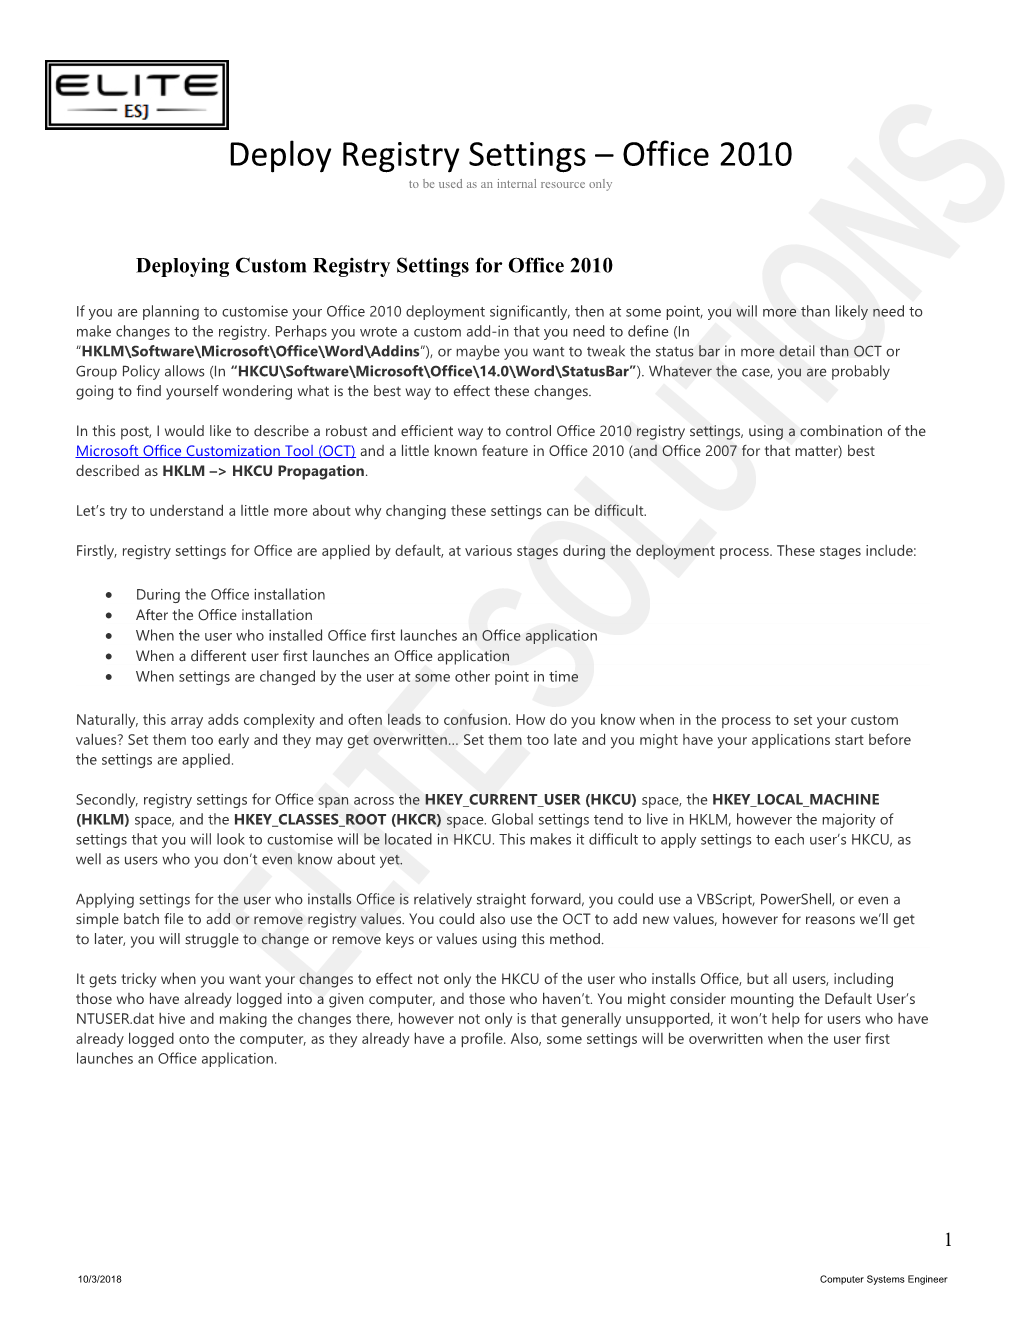 Deploying Custom Registry Settings for Office 2010